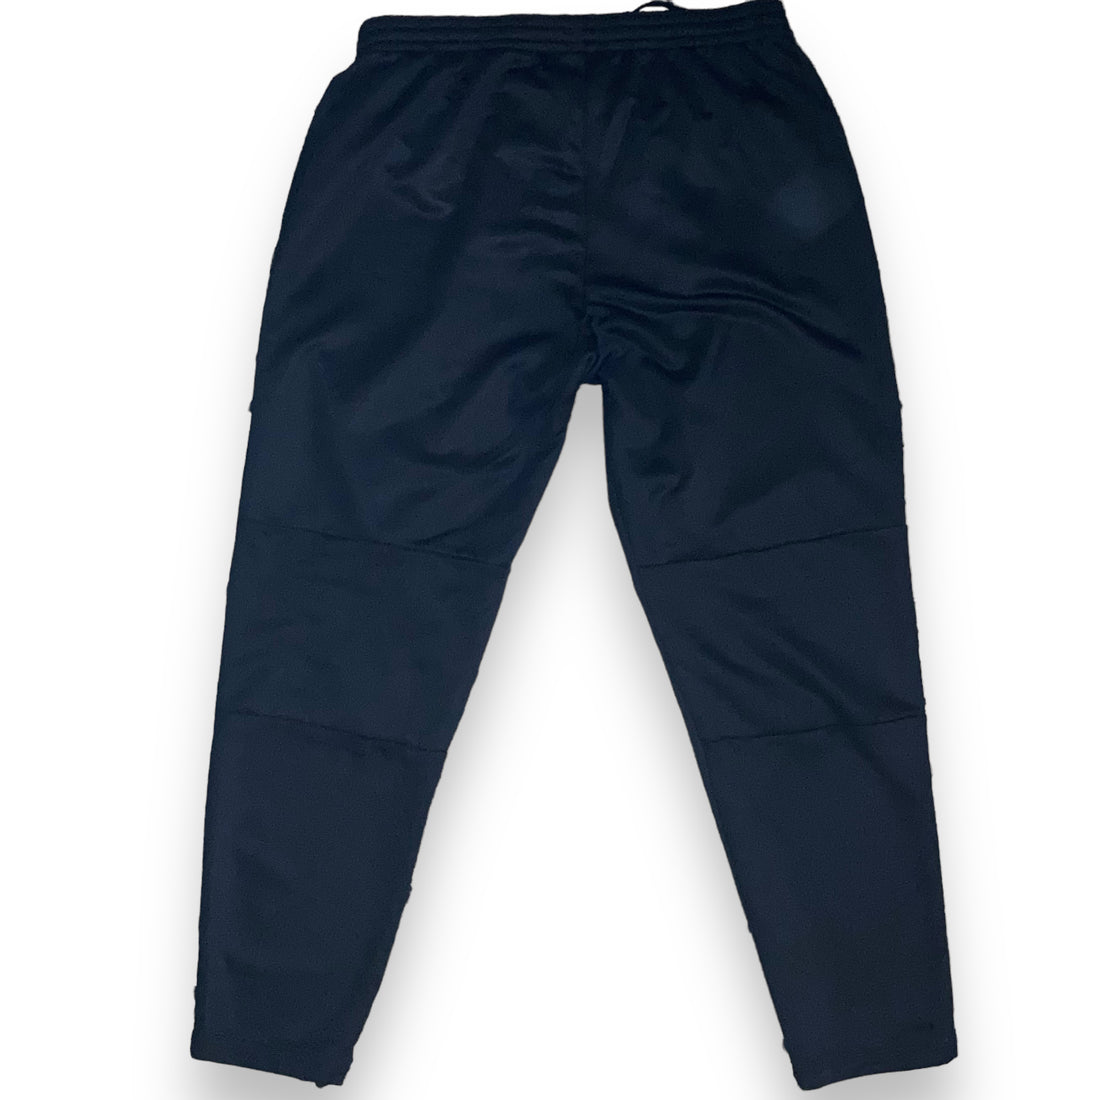 Pantaloni  NIKE Dry Fit  (L)